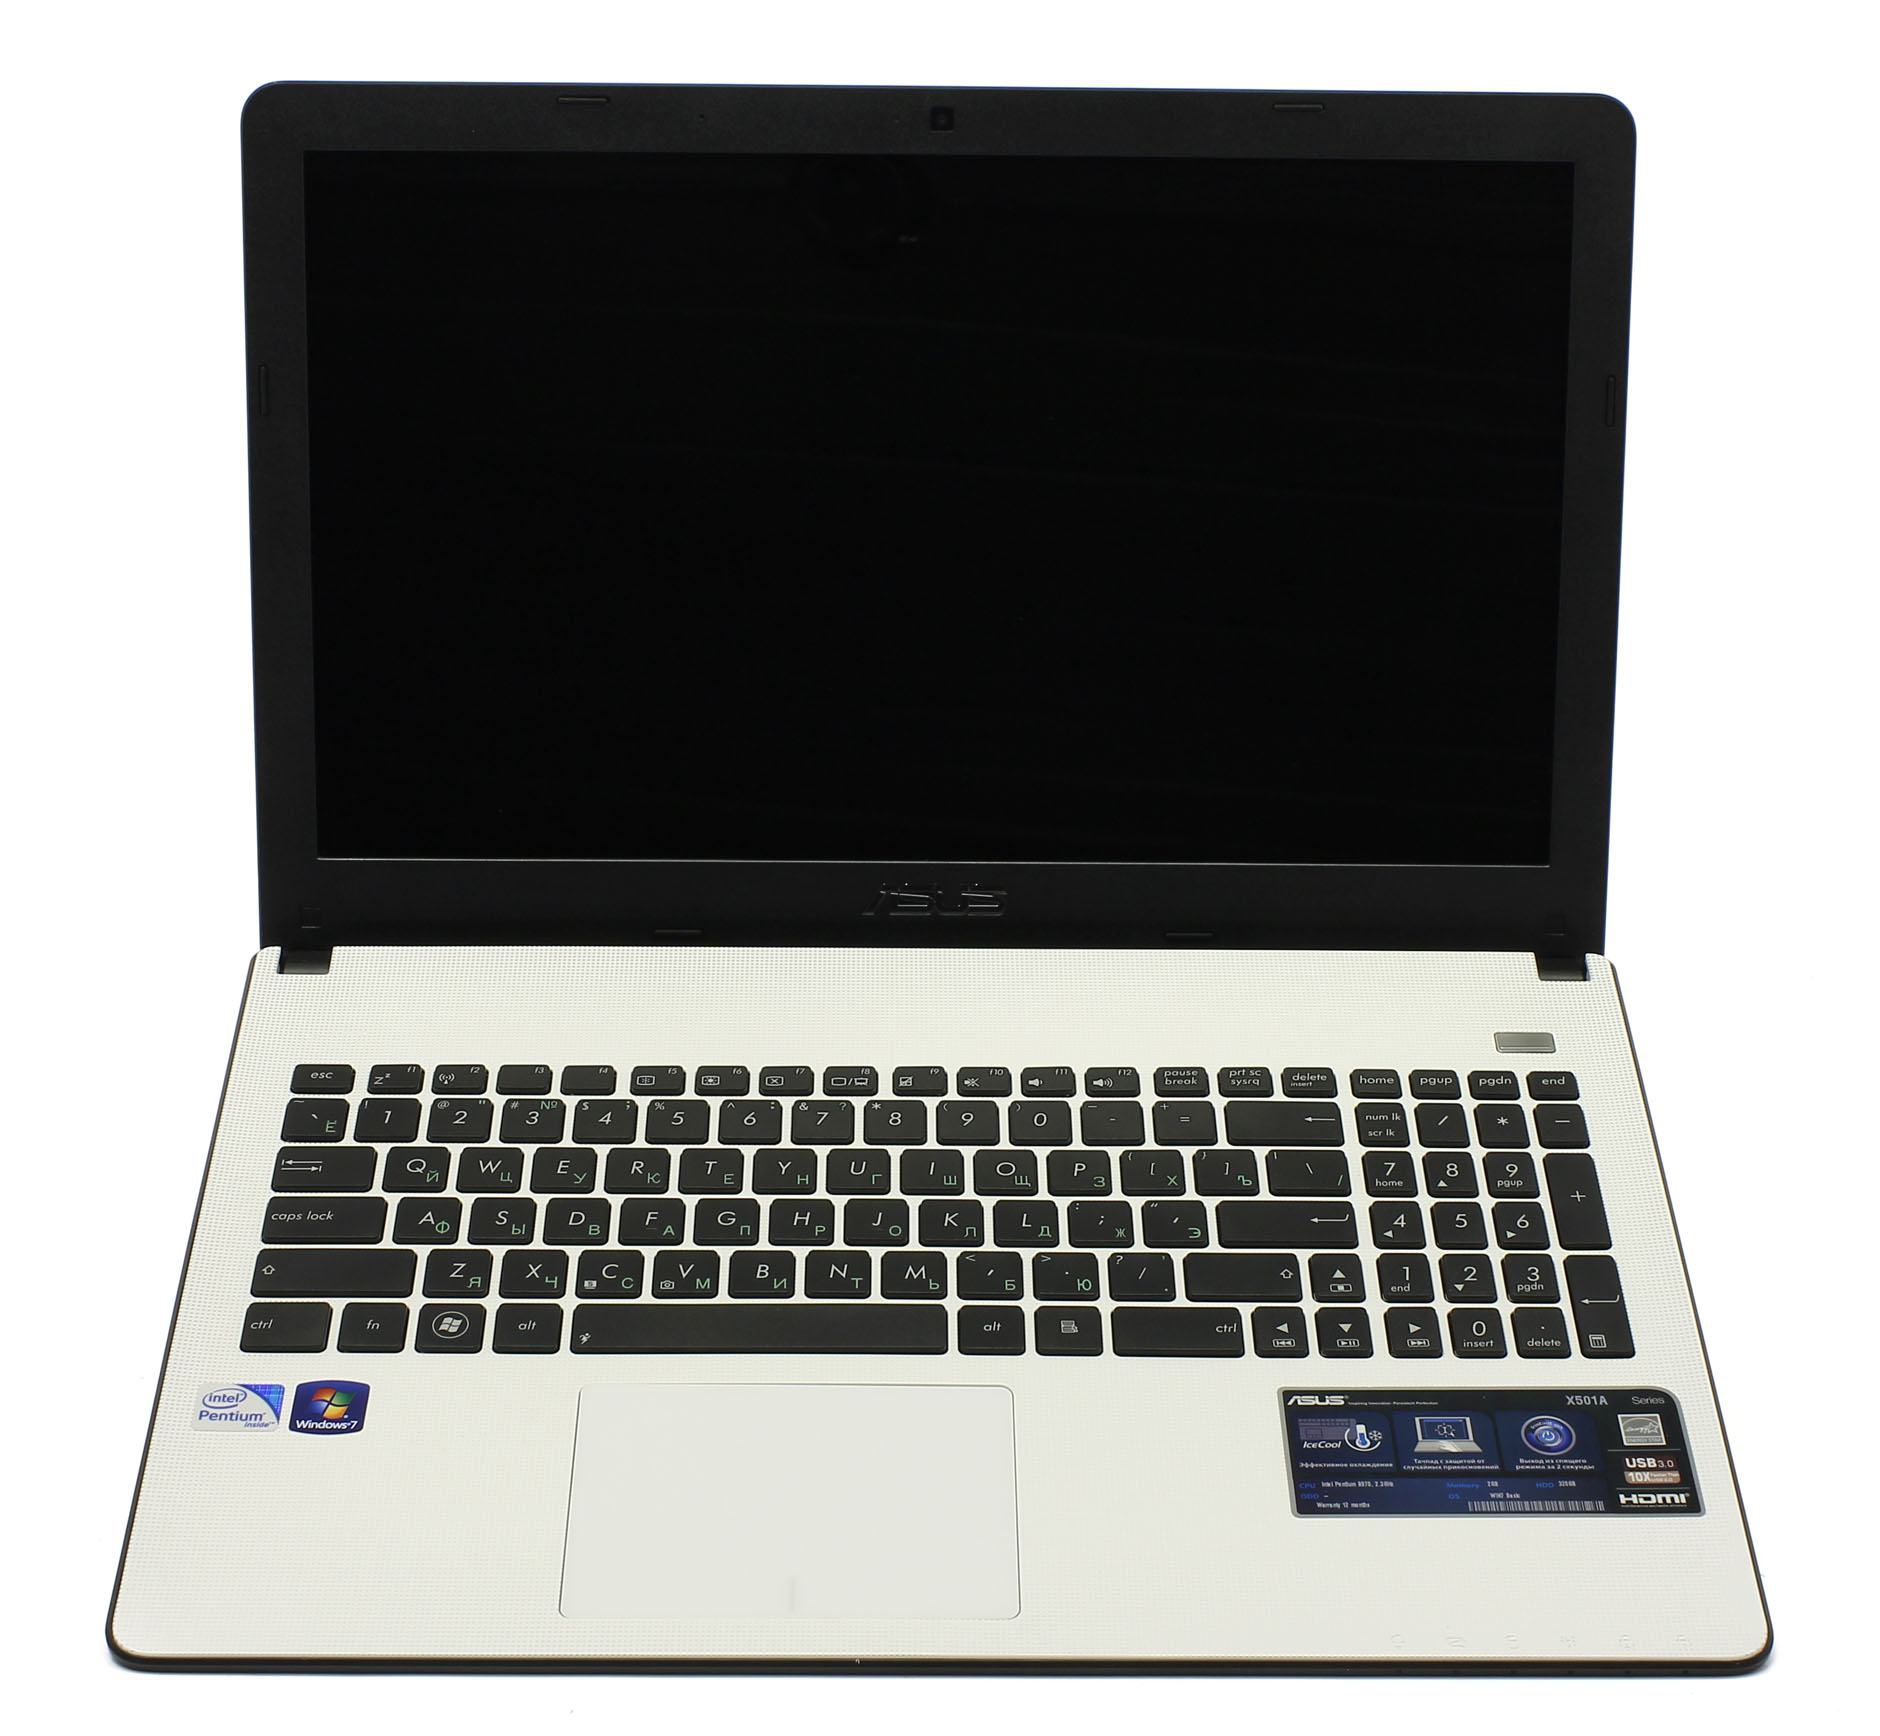 Ноутбук Asus X501a Купить